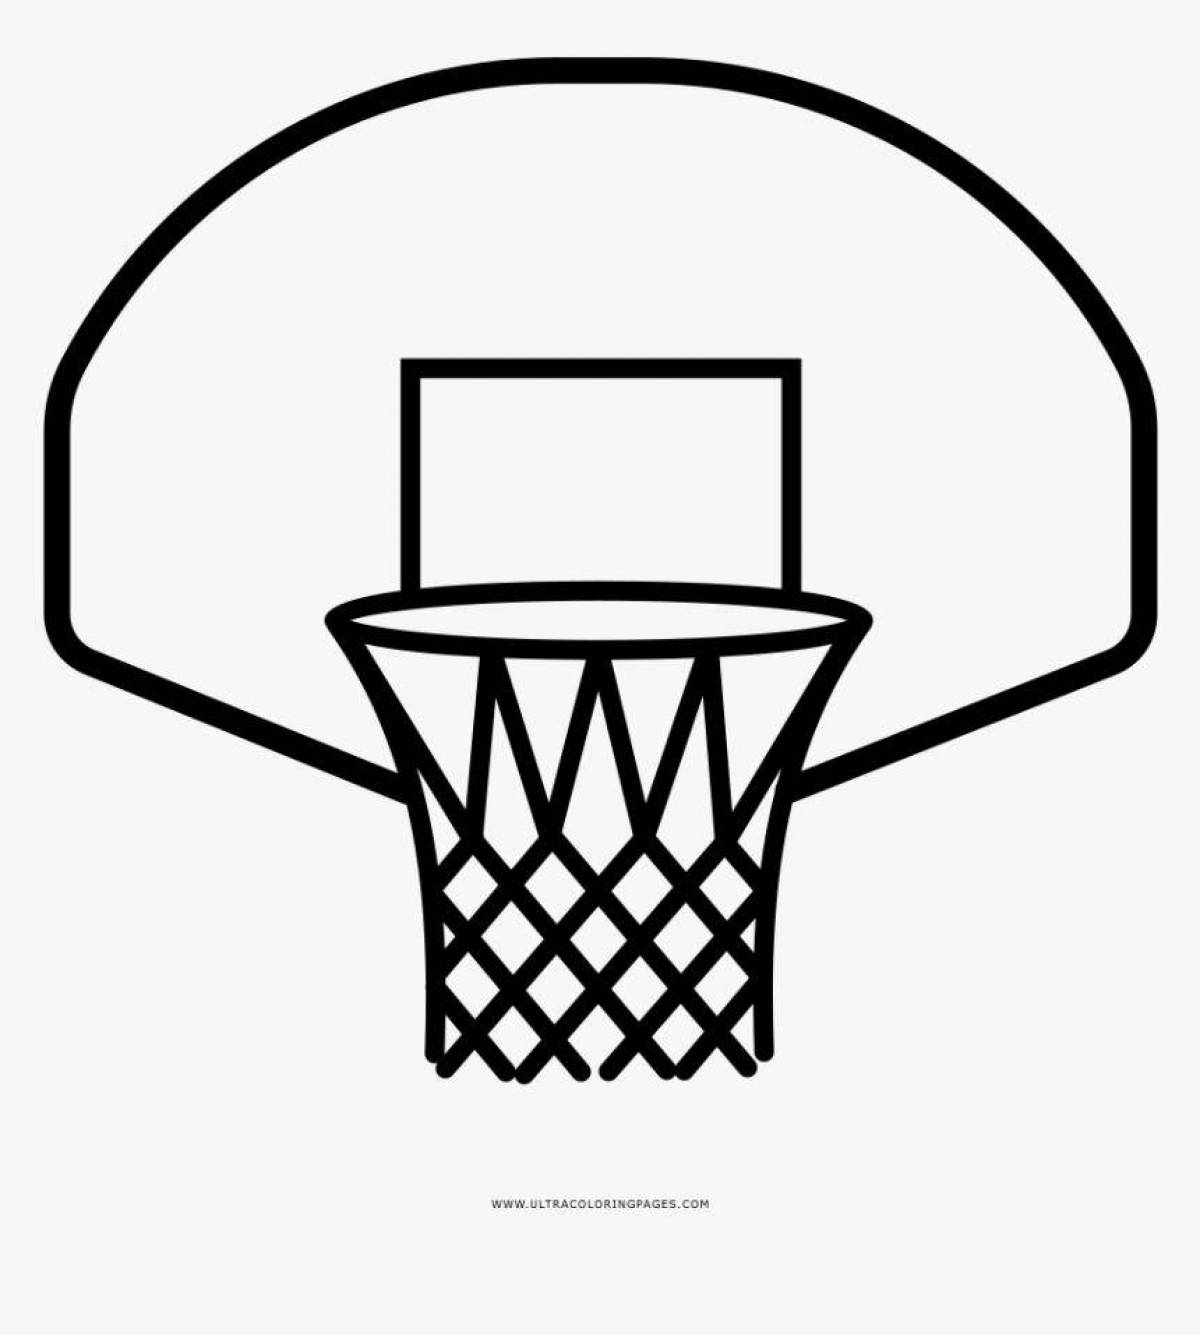 Cute basketball hoop coloring page